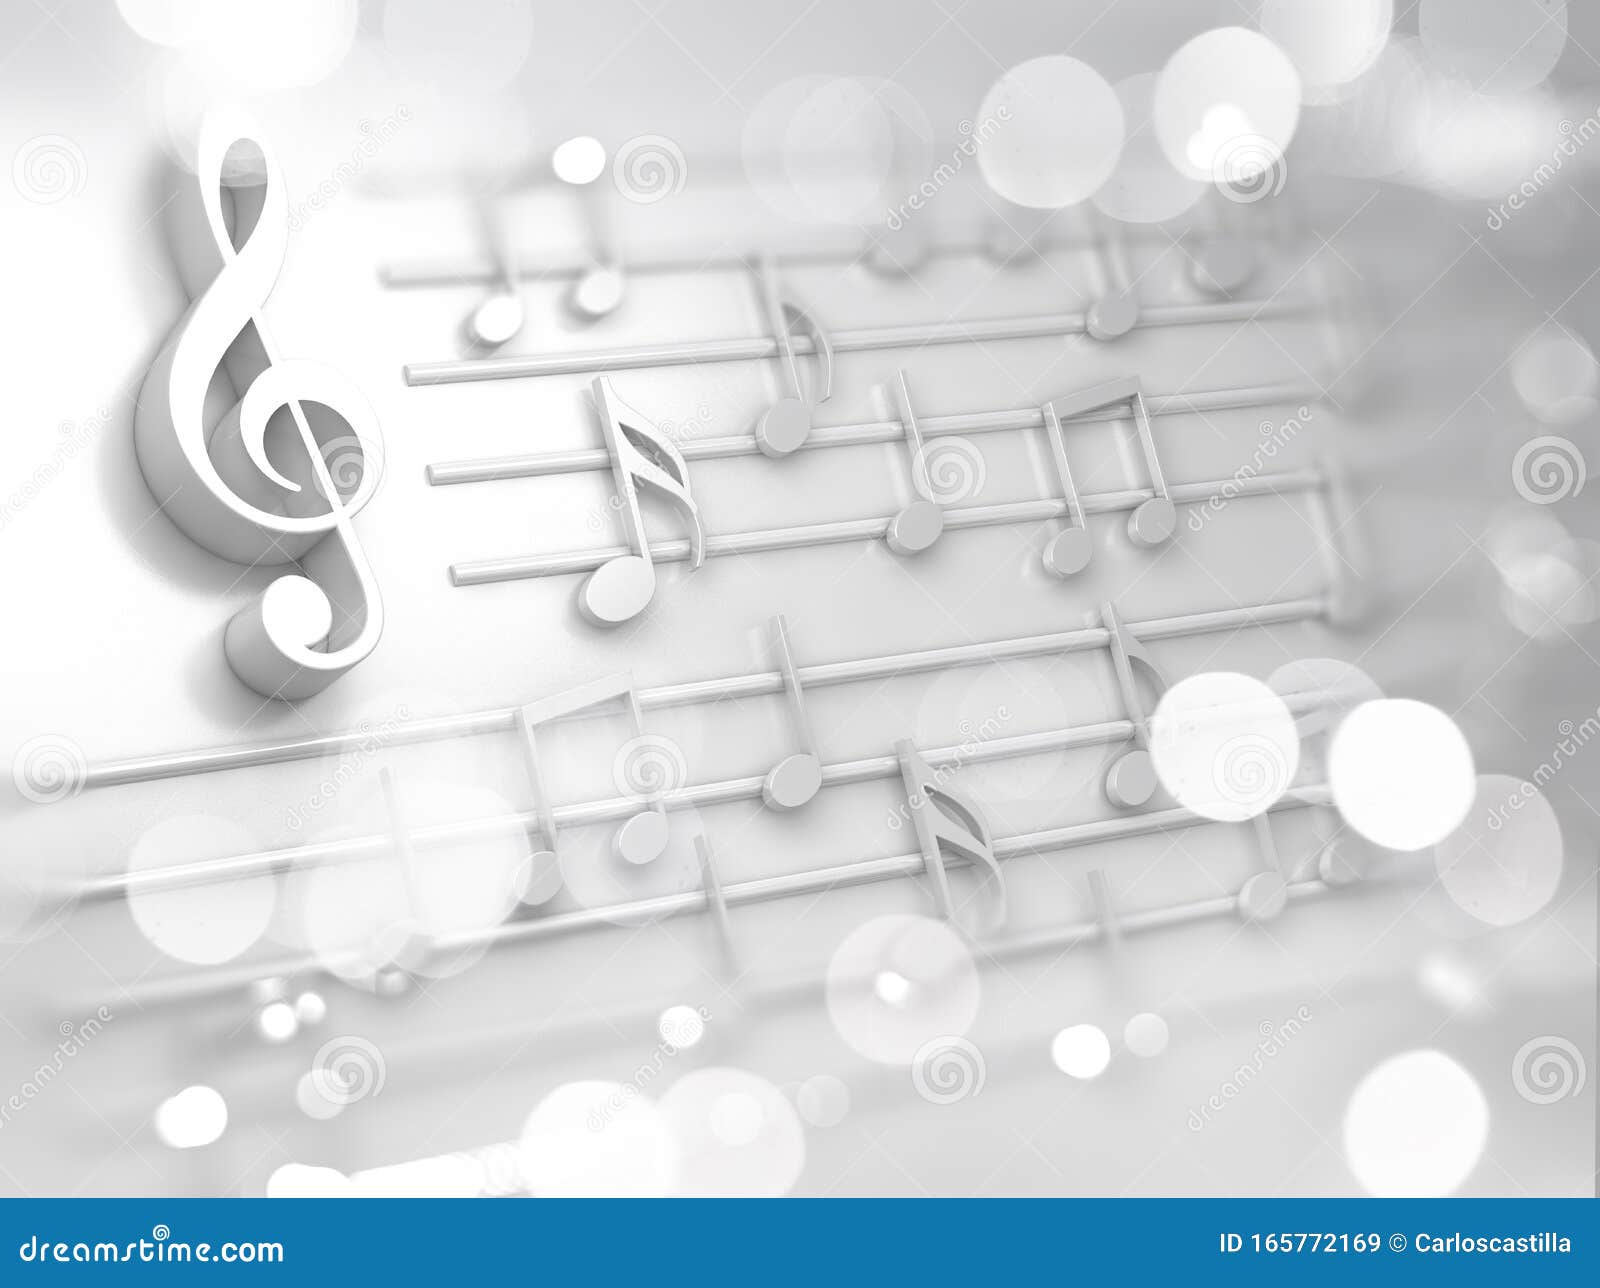 Nền âm nhạc trừu tượng màu trắng, ký hiệu và nốt nhạc cho Giáng sinh sẽ mang đến cho bạn một cảm giác tuyệt vời. Những ký hiệu và nốt nhạc được trình bày một cách trừu tượng sẽ giúp bạn tưởng tượng và cảm nhận được không khí của Giáng sinh. Đây chắc chắn sẽ là một món quà đặc biệt dành cho những ai yêu âm nhạc.